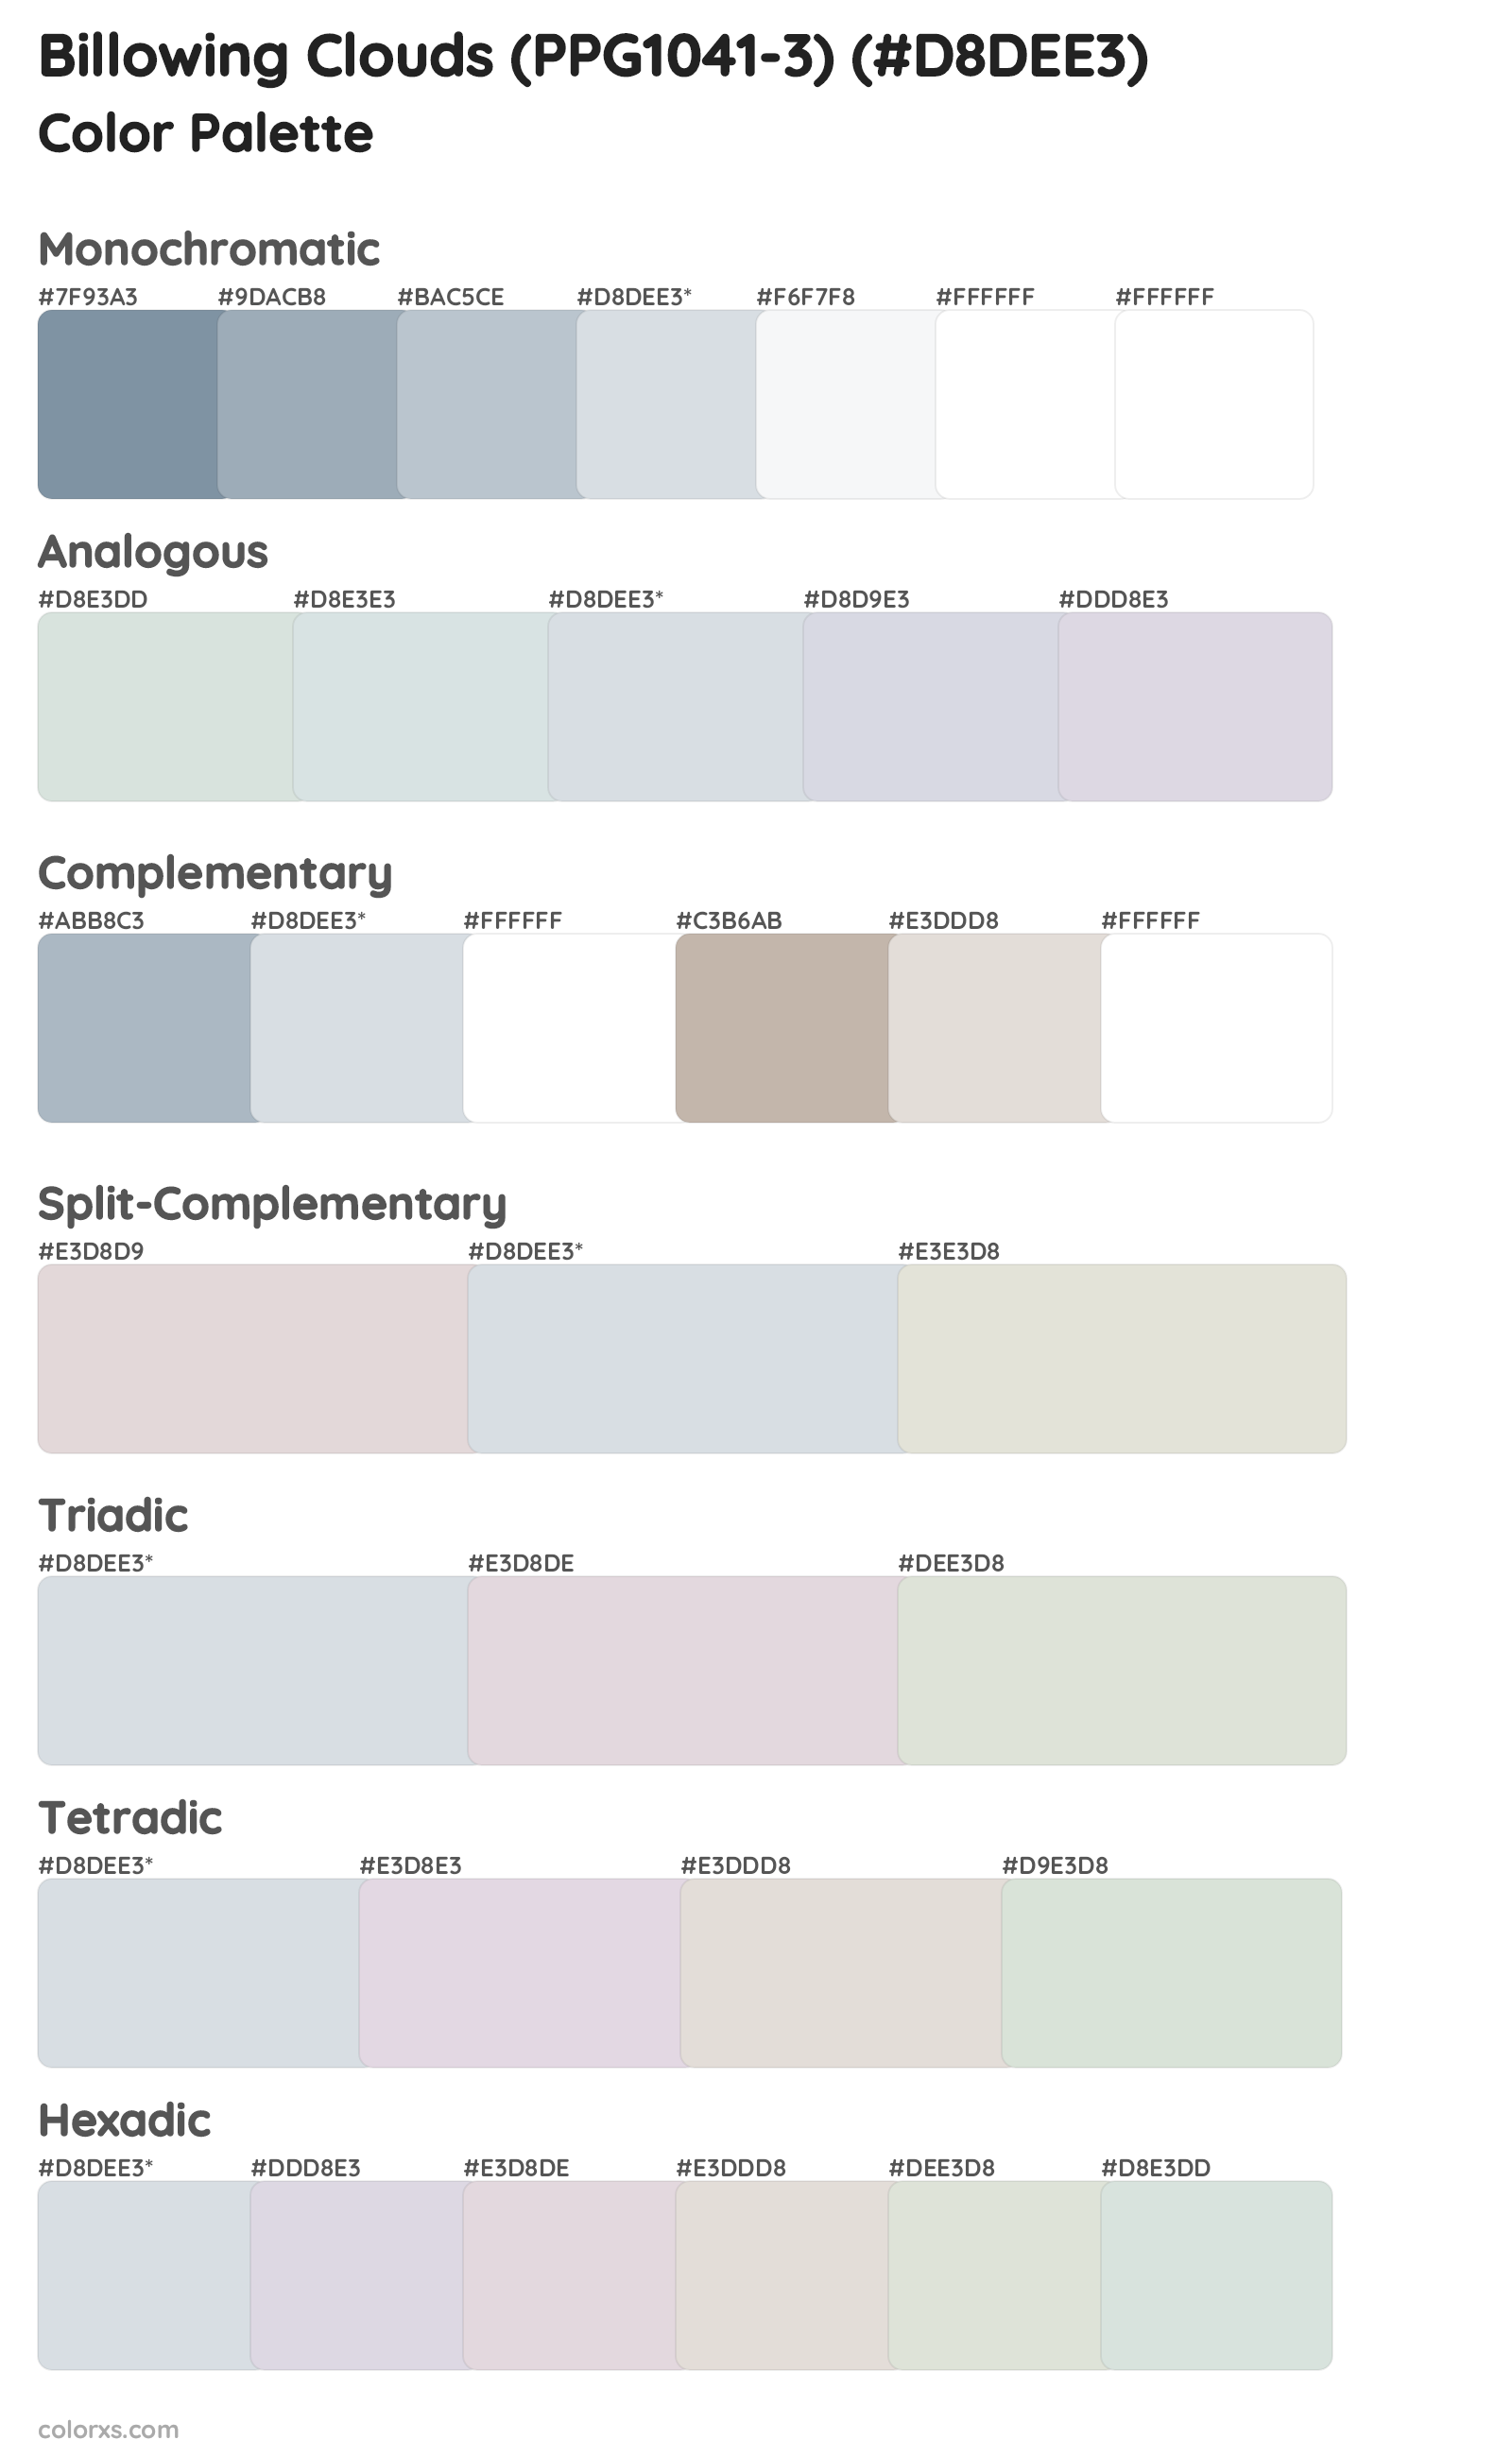 Billowing Clouds (PPG1041-3) Color Scheme Palettes